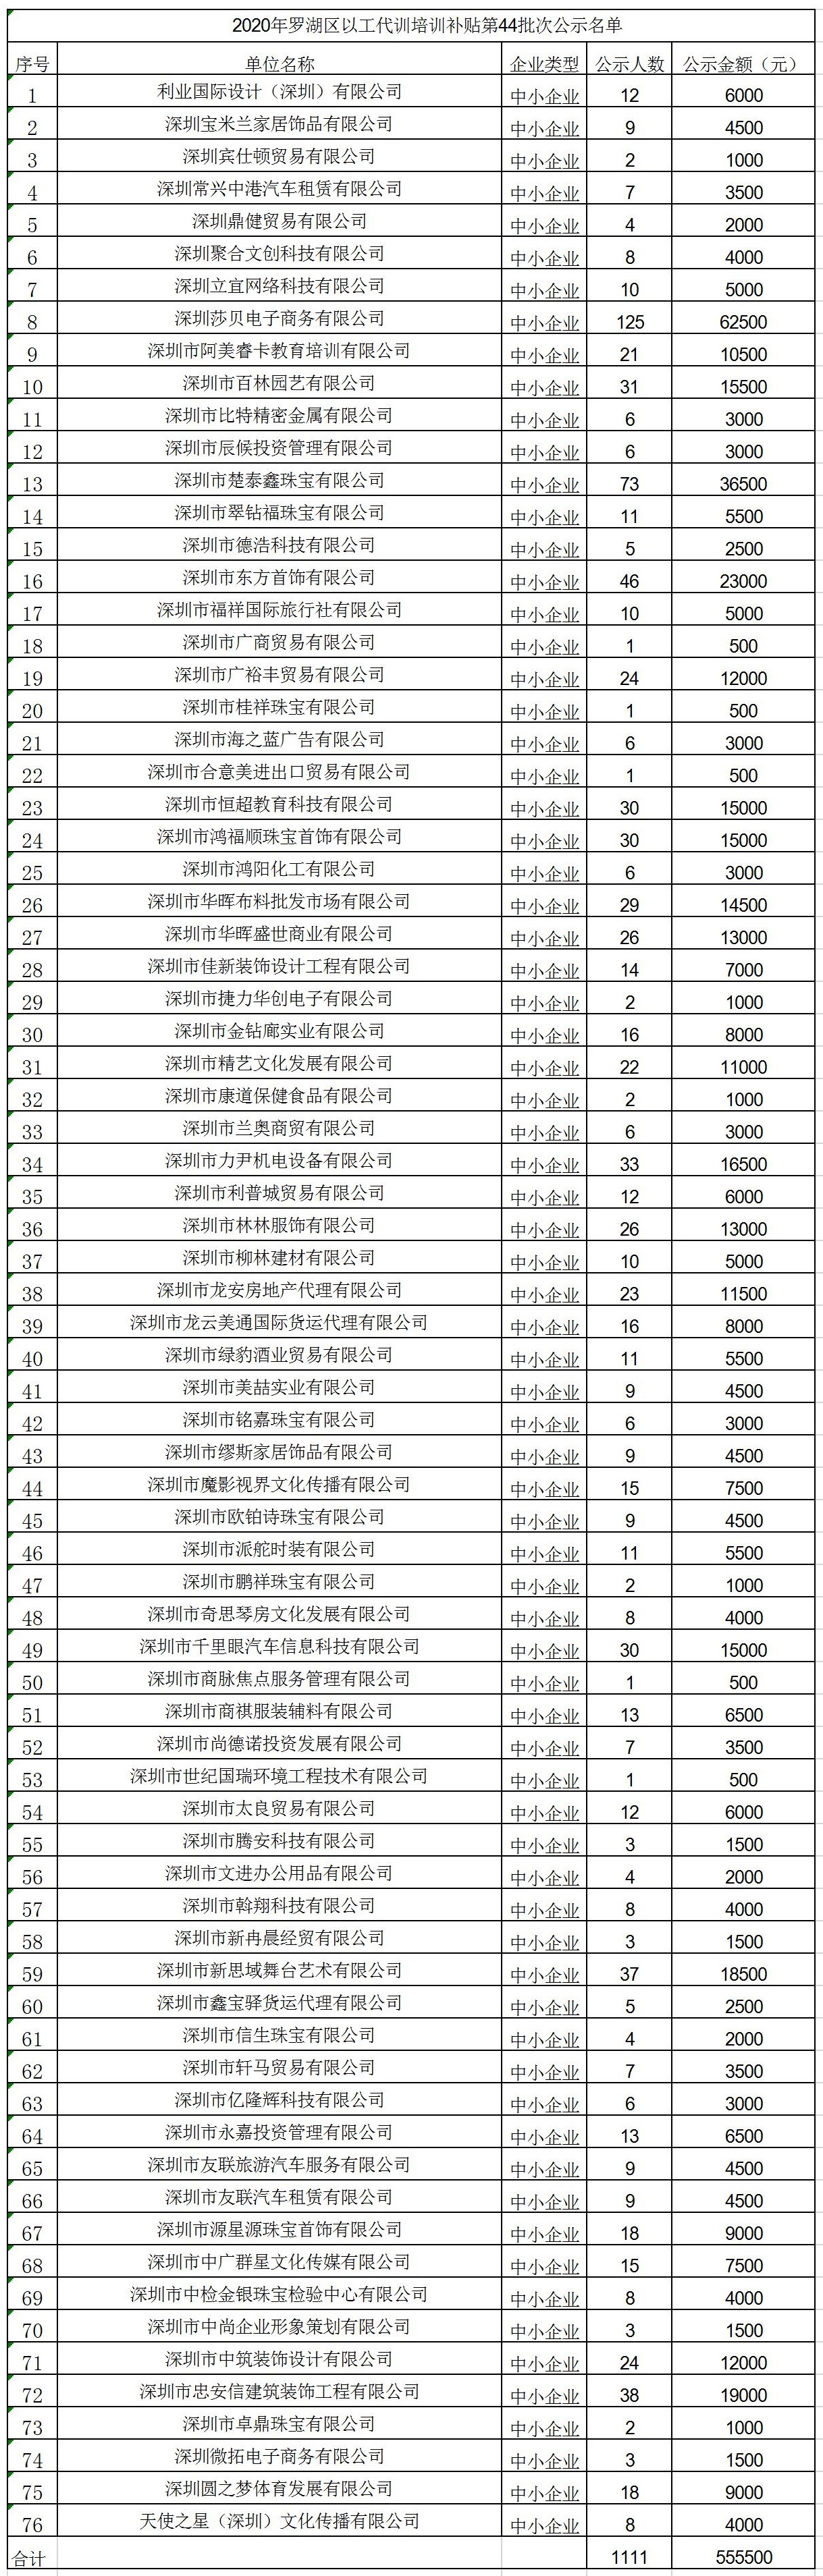 2020年深圳市罗湖区以工代训培训补贴第44批次公示名单.jpg